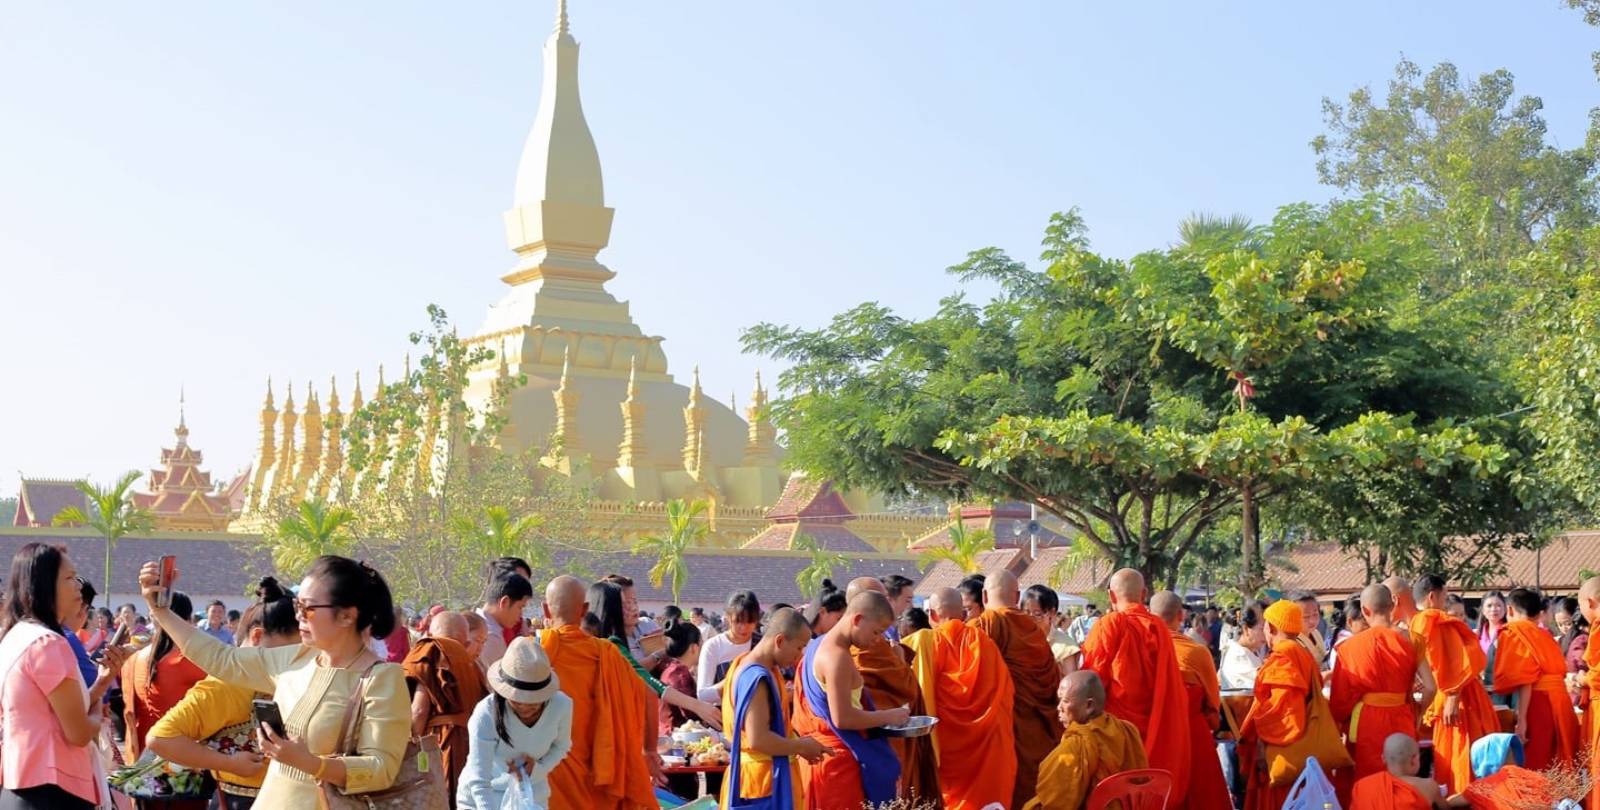 Laos Festival in November